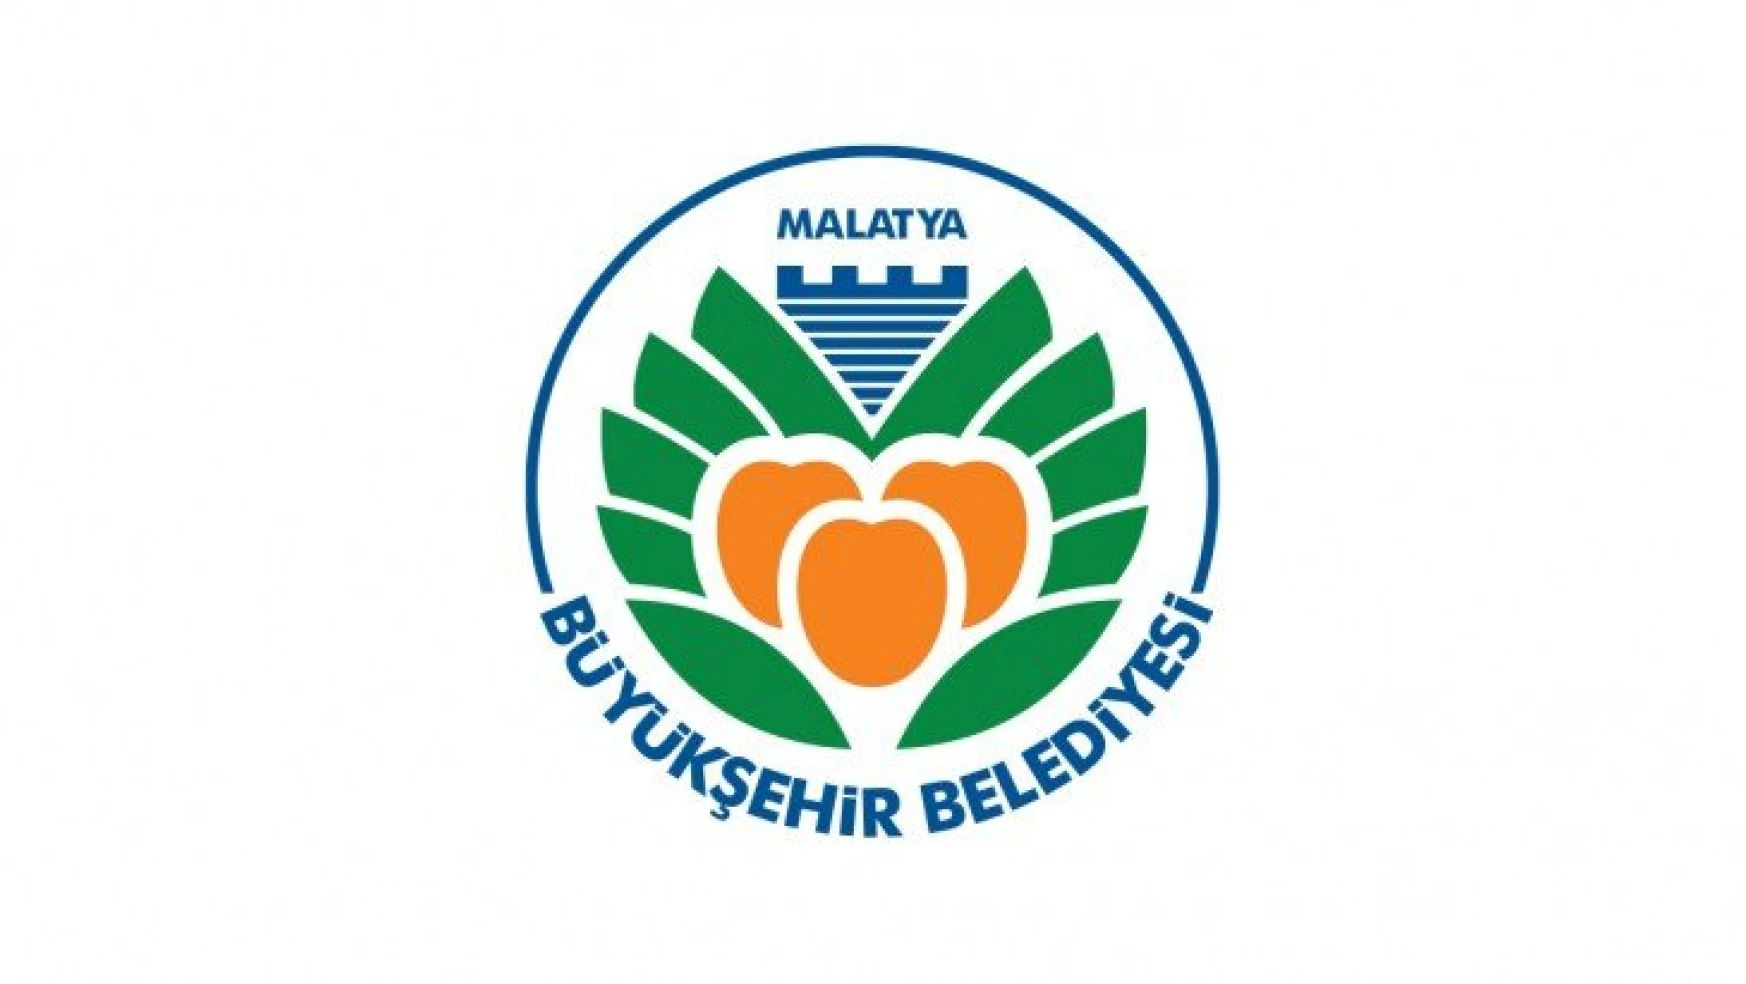 Malatya Büyükşehir Belediyesi Ve TBB İşbirliğiyle Hizmet İçi Eğitim Semineri Düzenleniyor